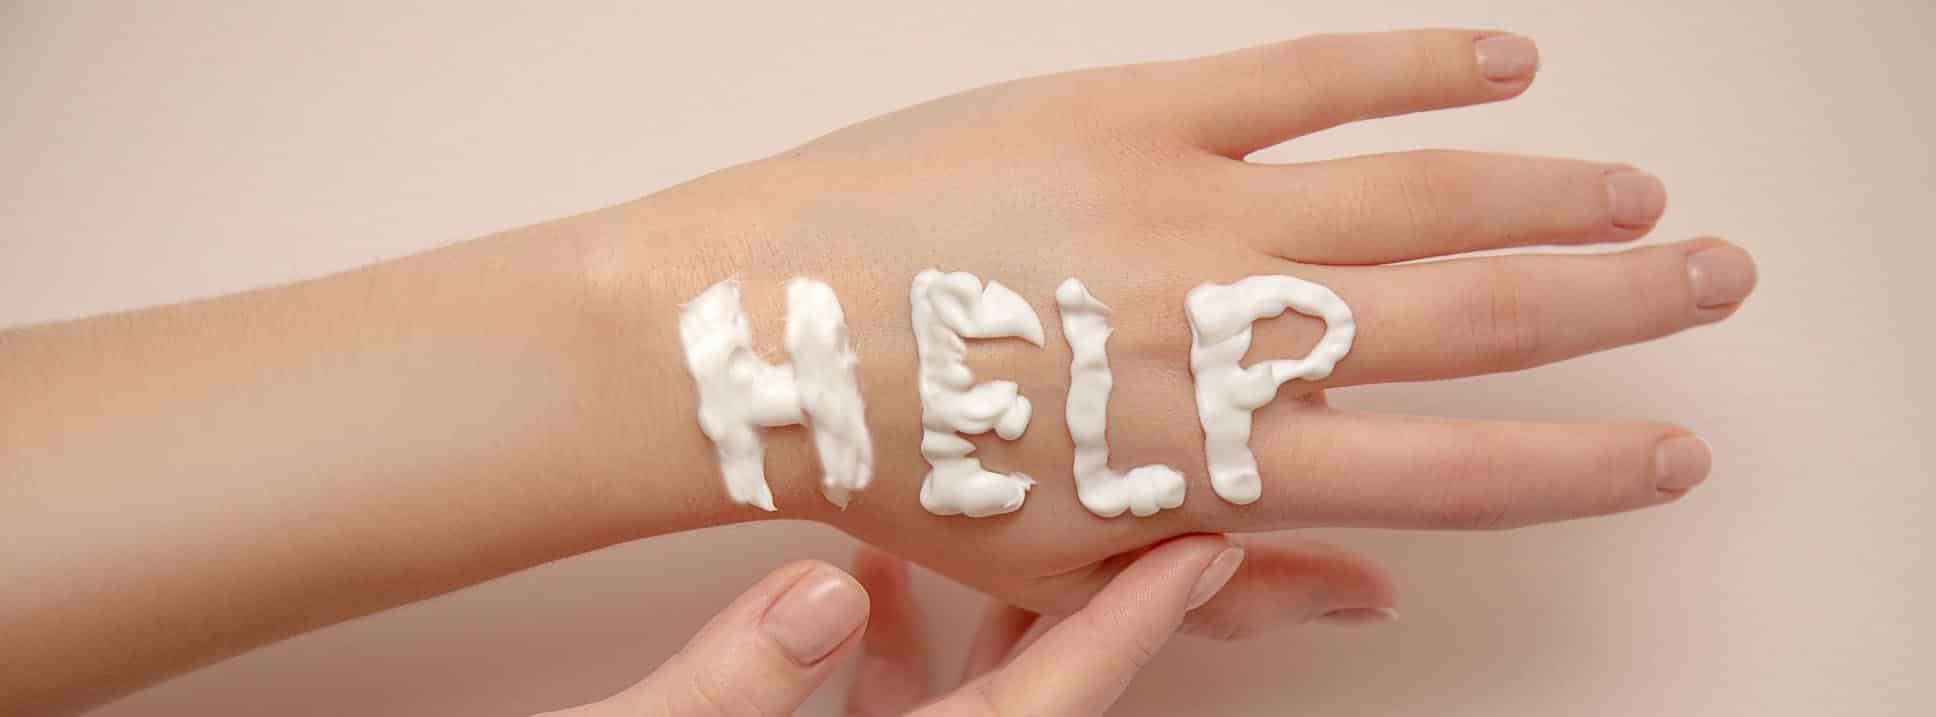 Cuidados de la piel en invierno: manos de mujer con la palabra ayuda en inglés realizada con crema